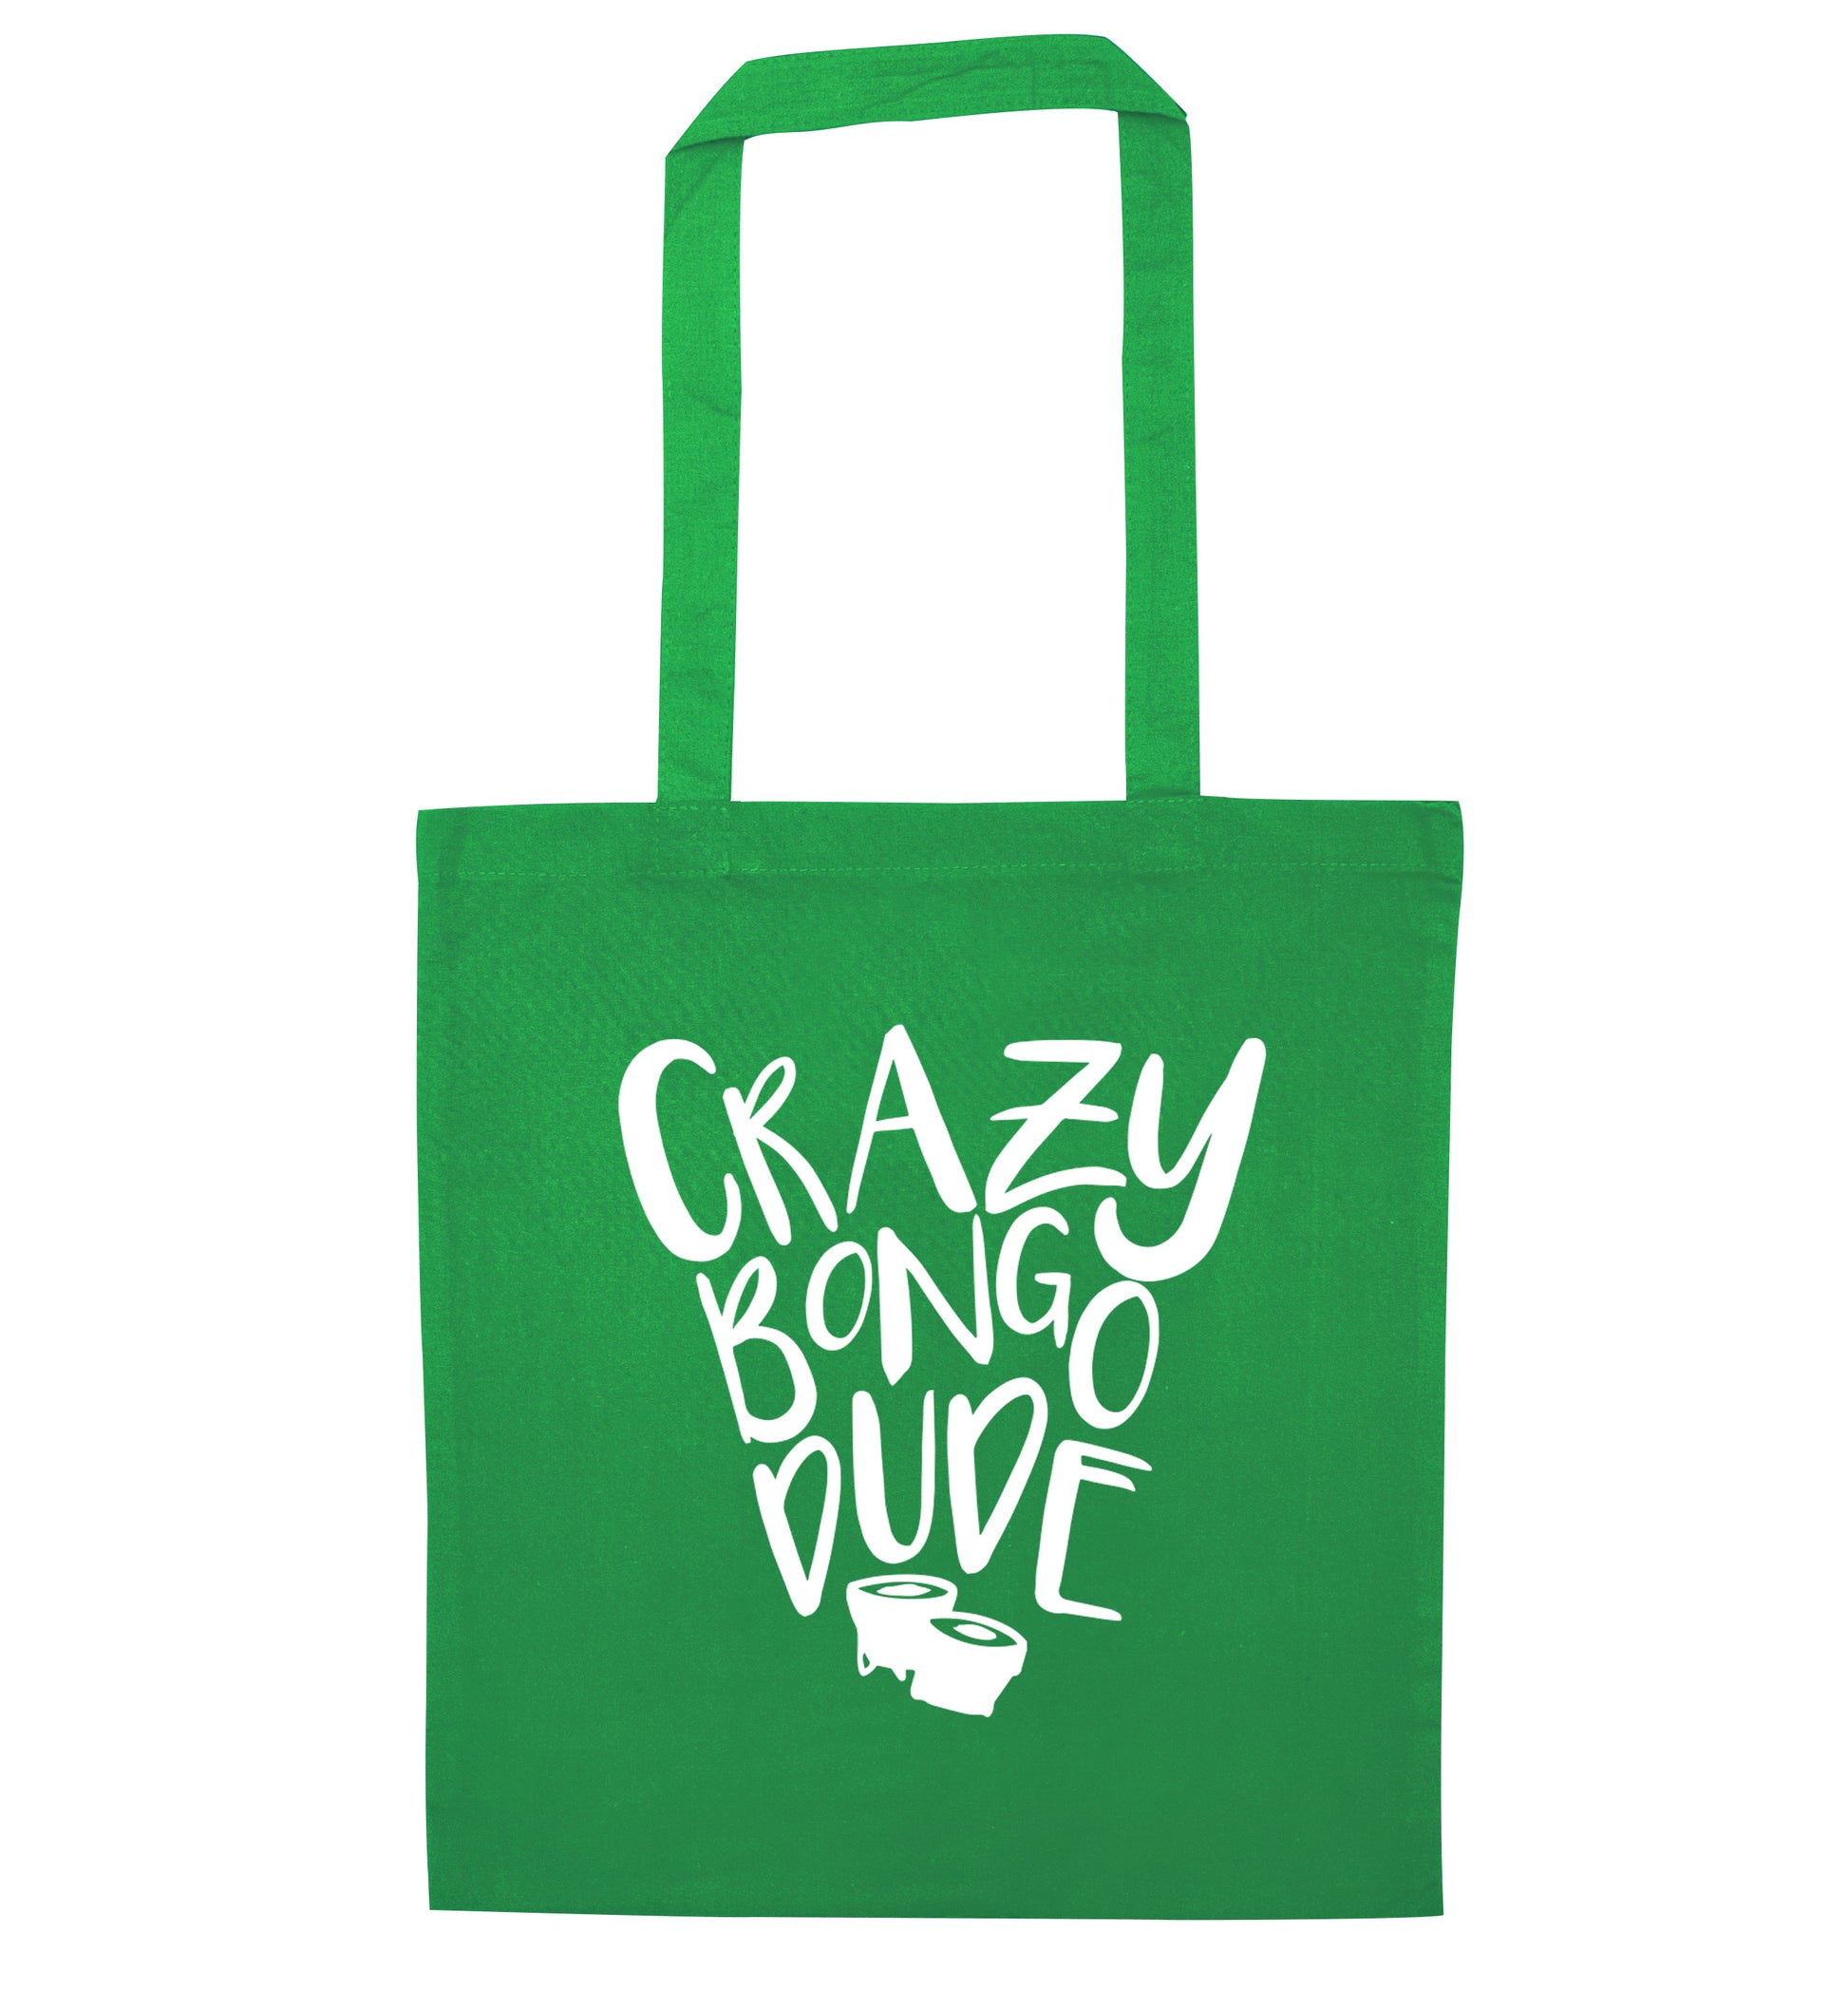 Crazy bongo dude green tote bag